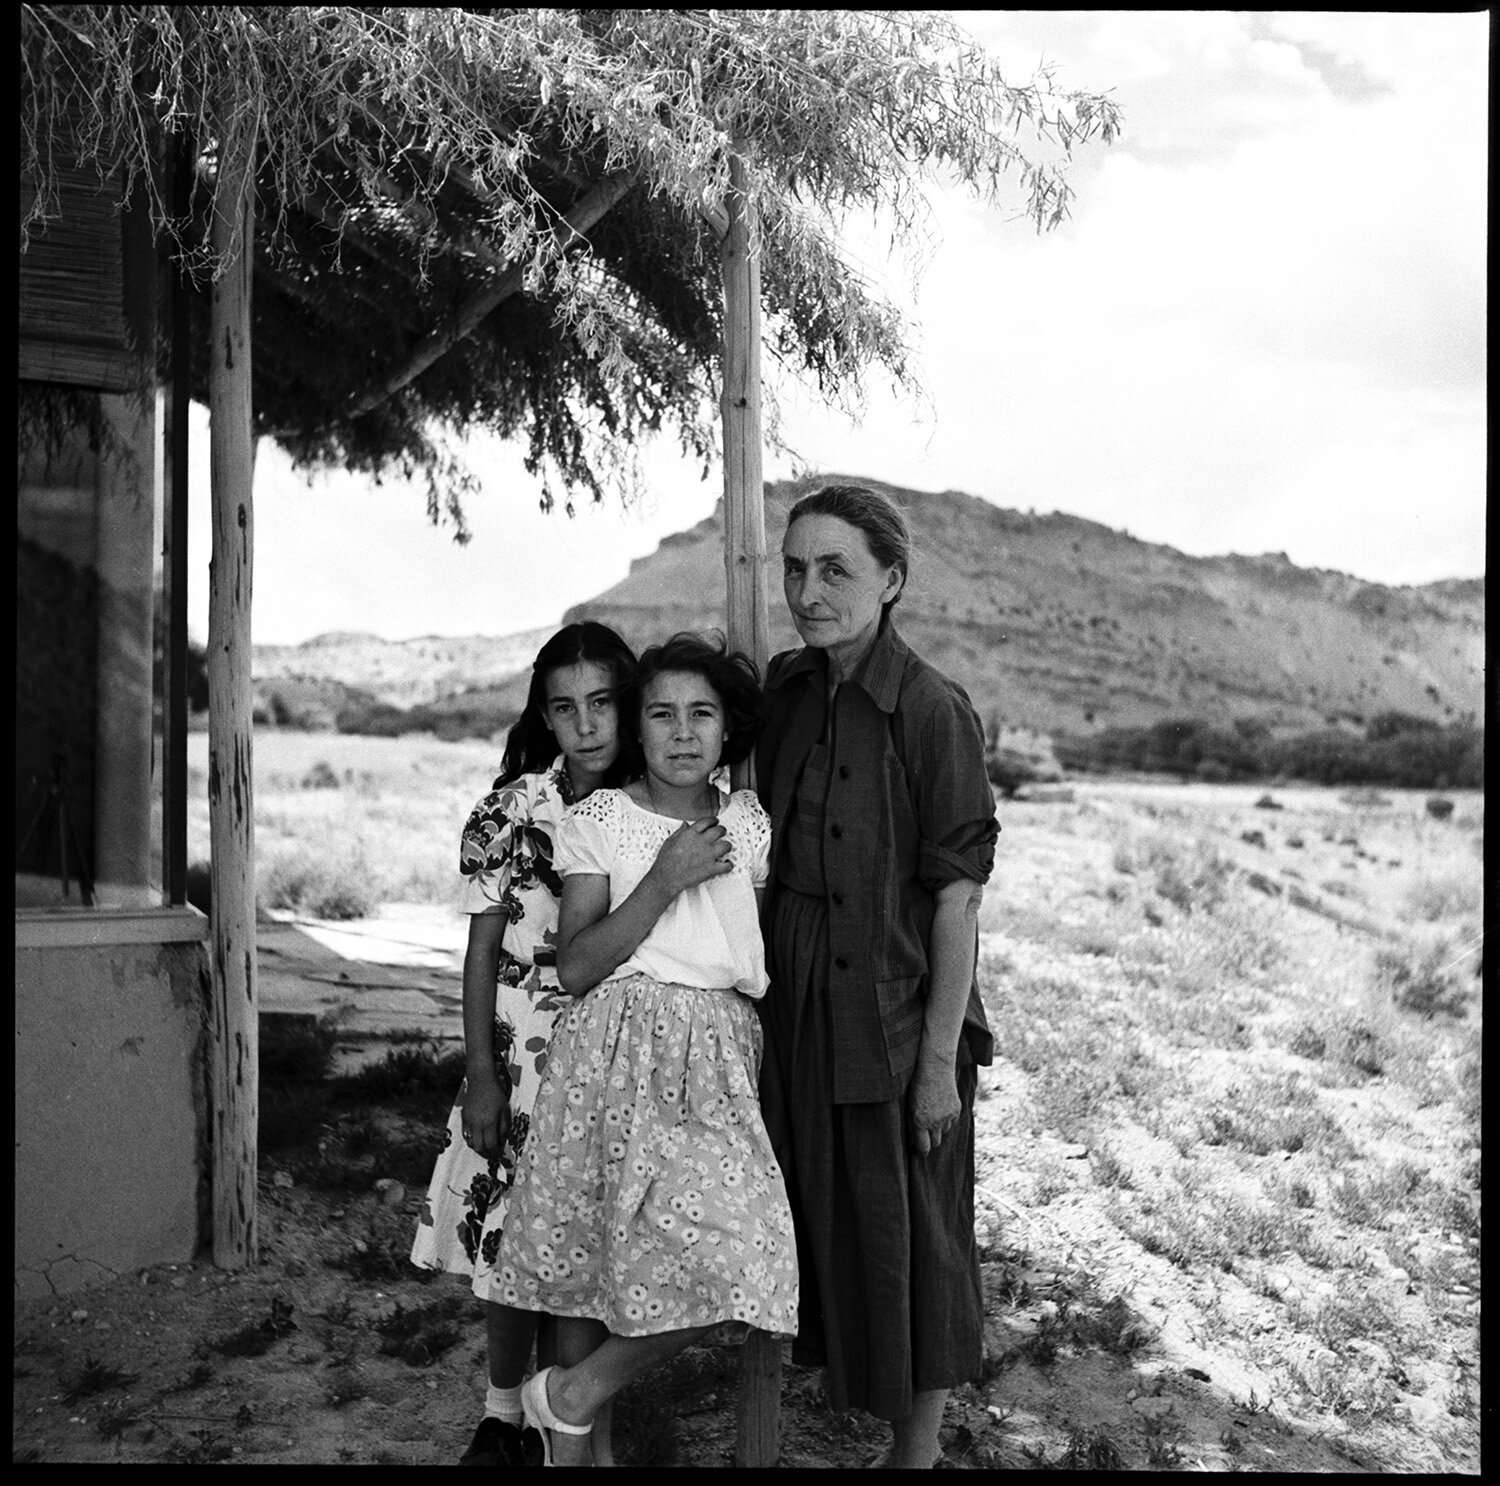 Georgia O'Keeffe, Abiquiu, New Mexico, 1951